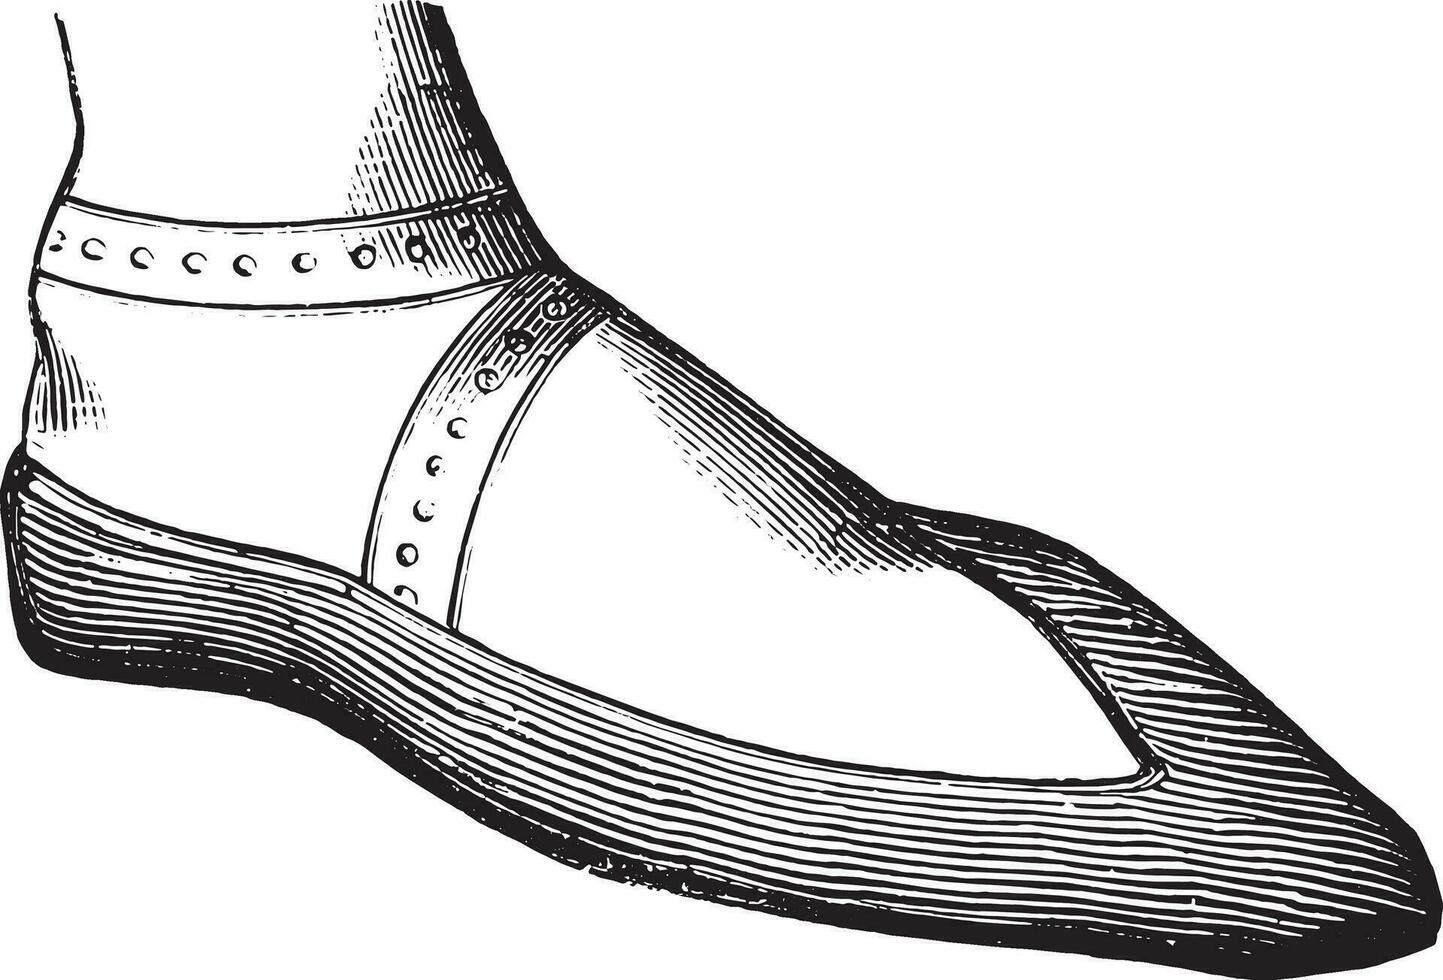 kvinnas sko i de tolfte århundrade, efter de gräs, årgång gravyr. vektor